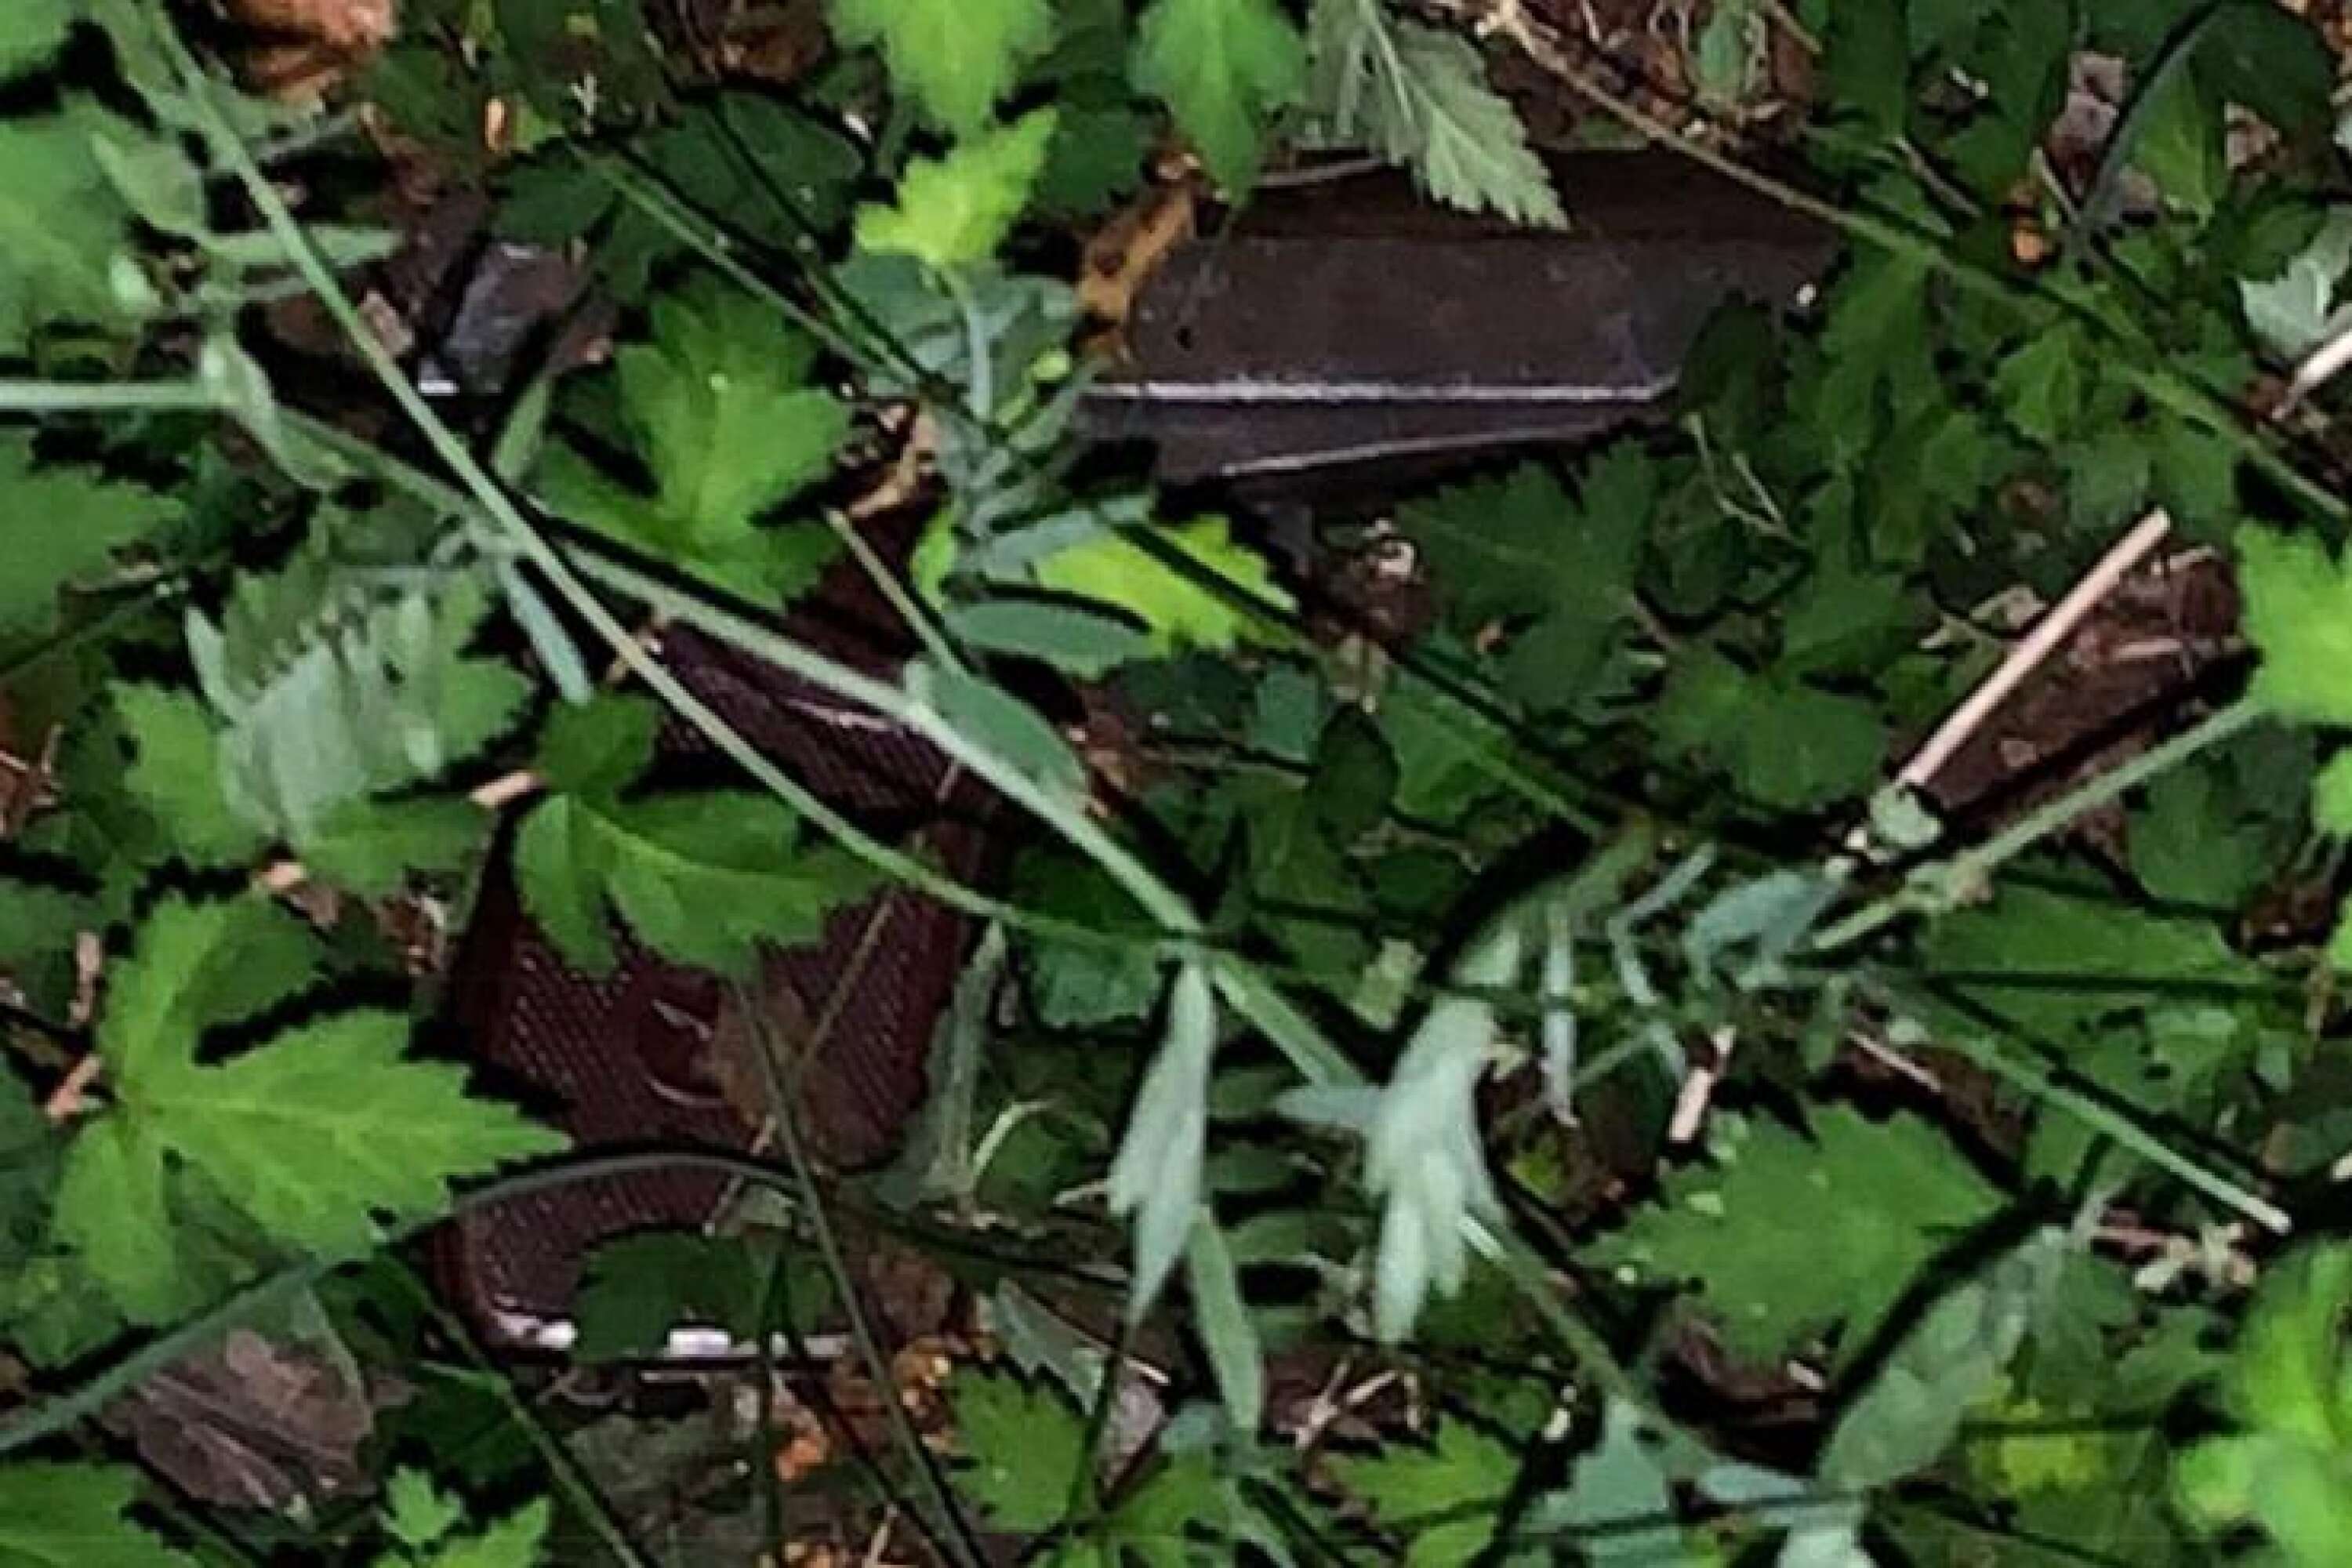 Den skarpladdade Makarovpistolen hittades i en buske i ett bostadsområde på Rud i Karlstad.